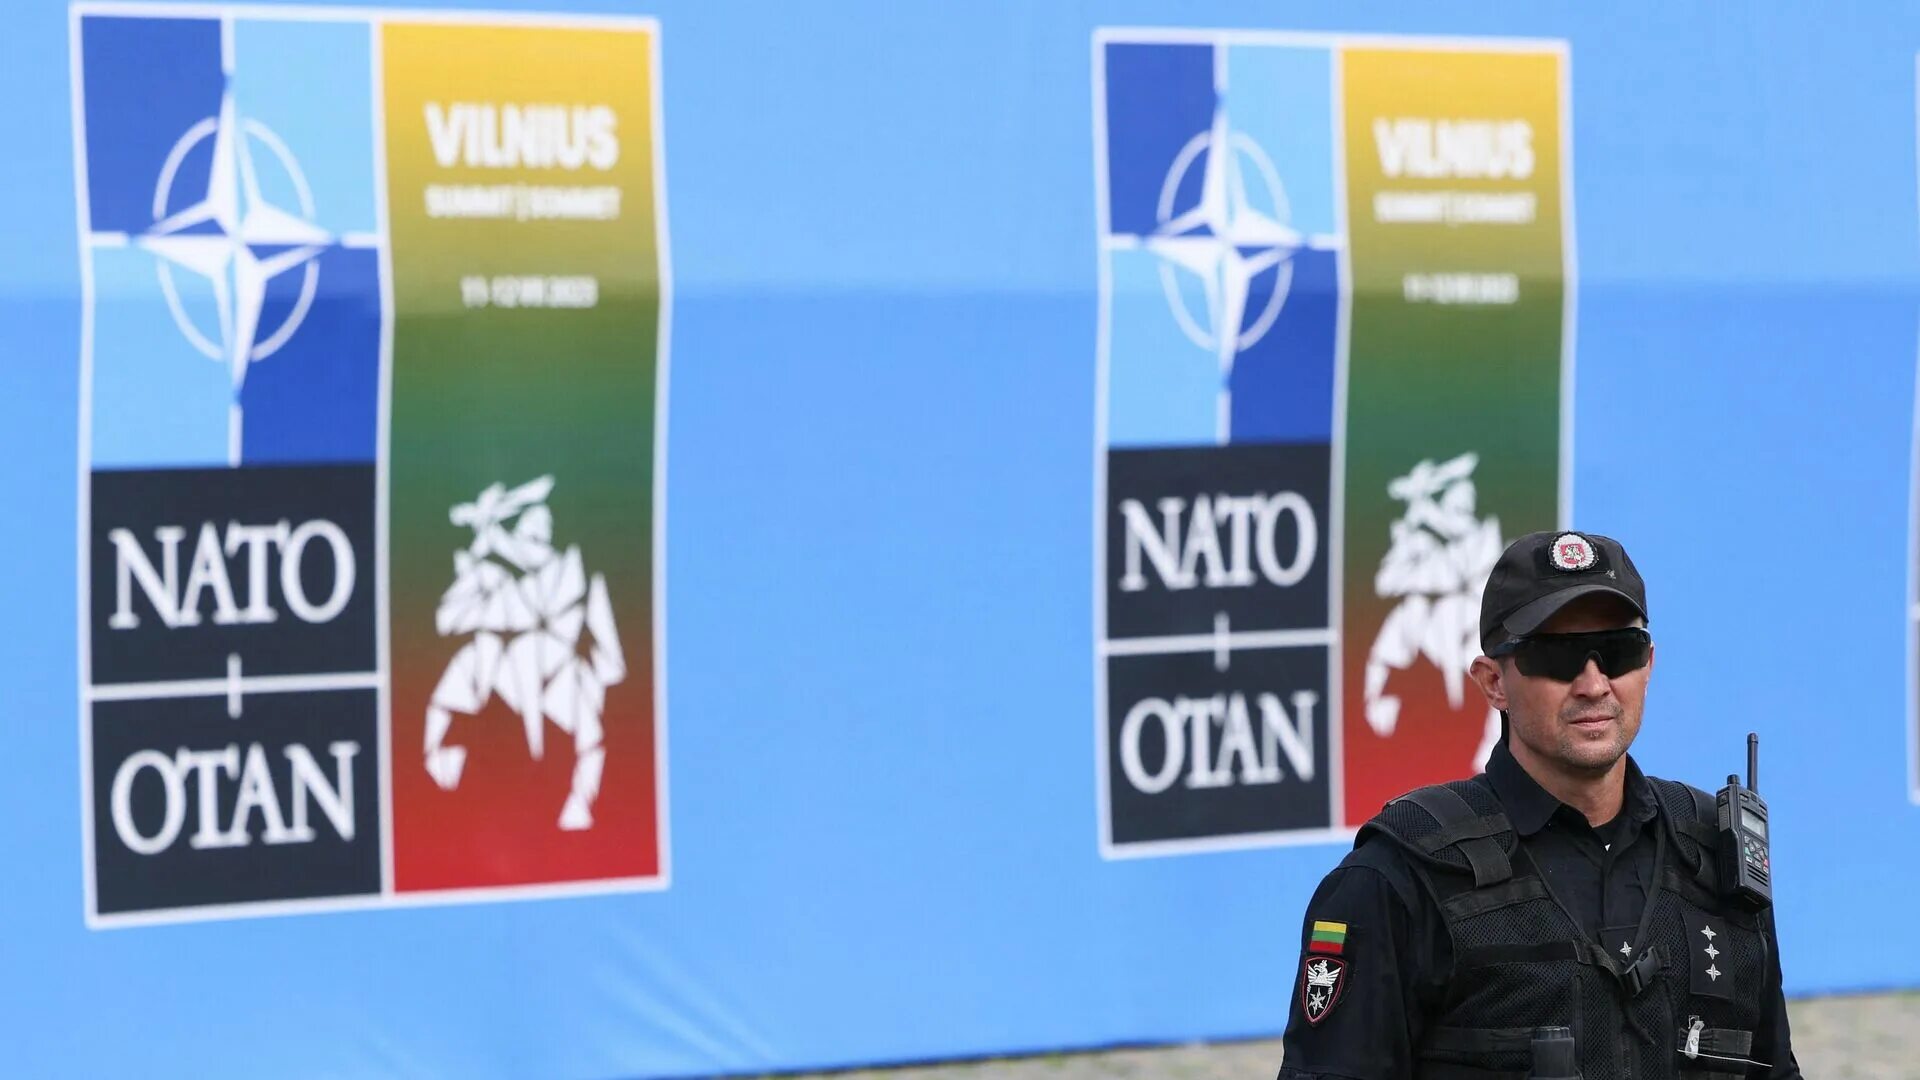 Риа нато. Вильнюс НАТО. Эмблема НАТО 2023. Встреча НАТО. Охрана аэропорта.